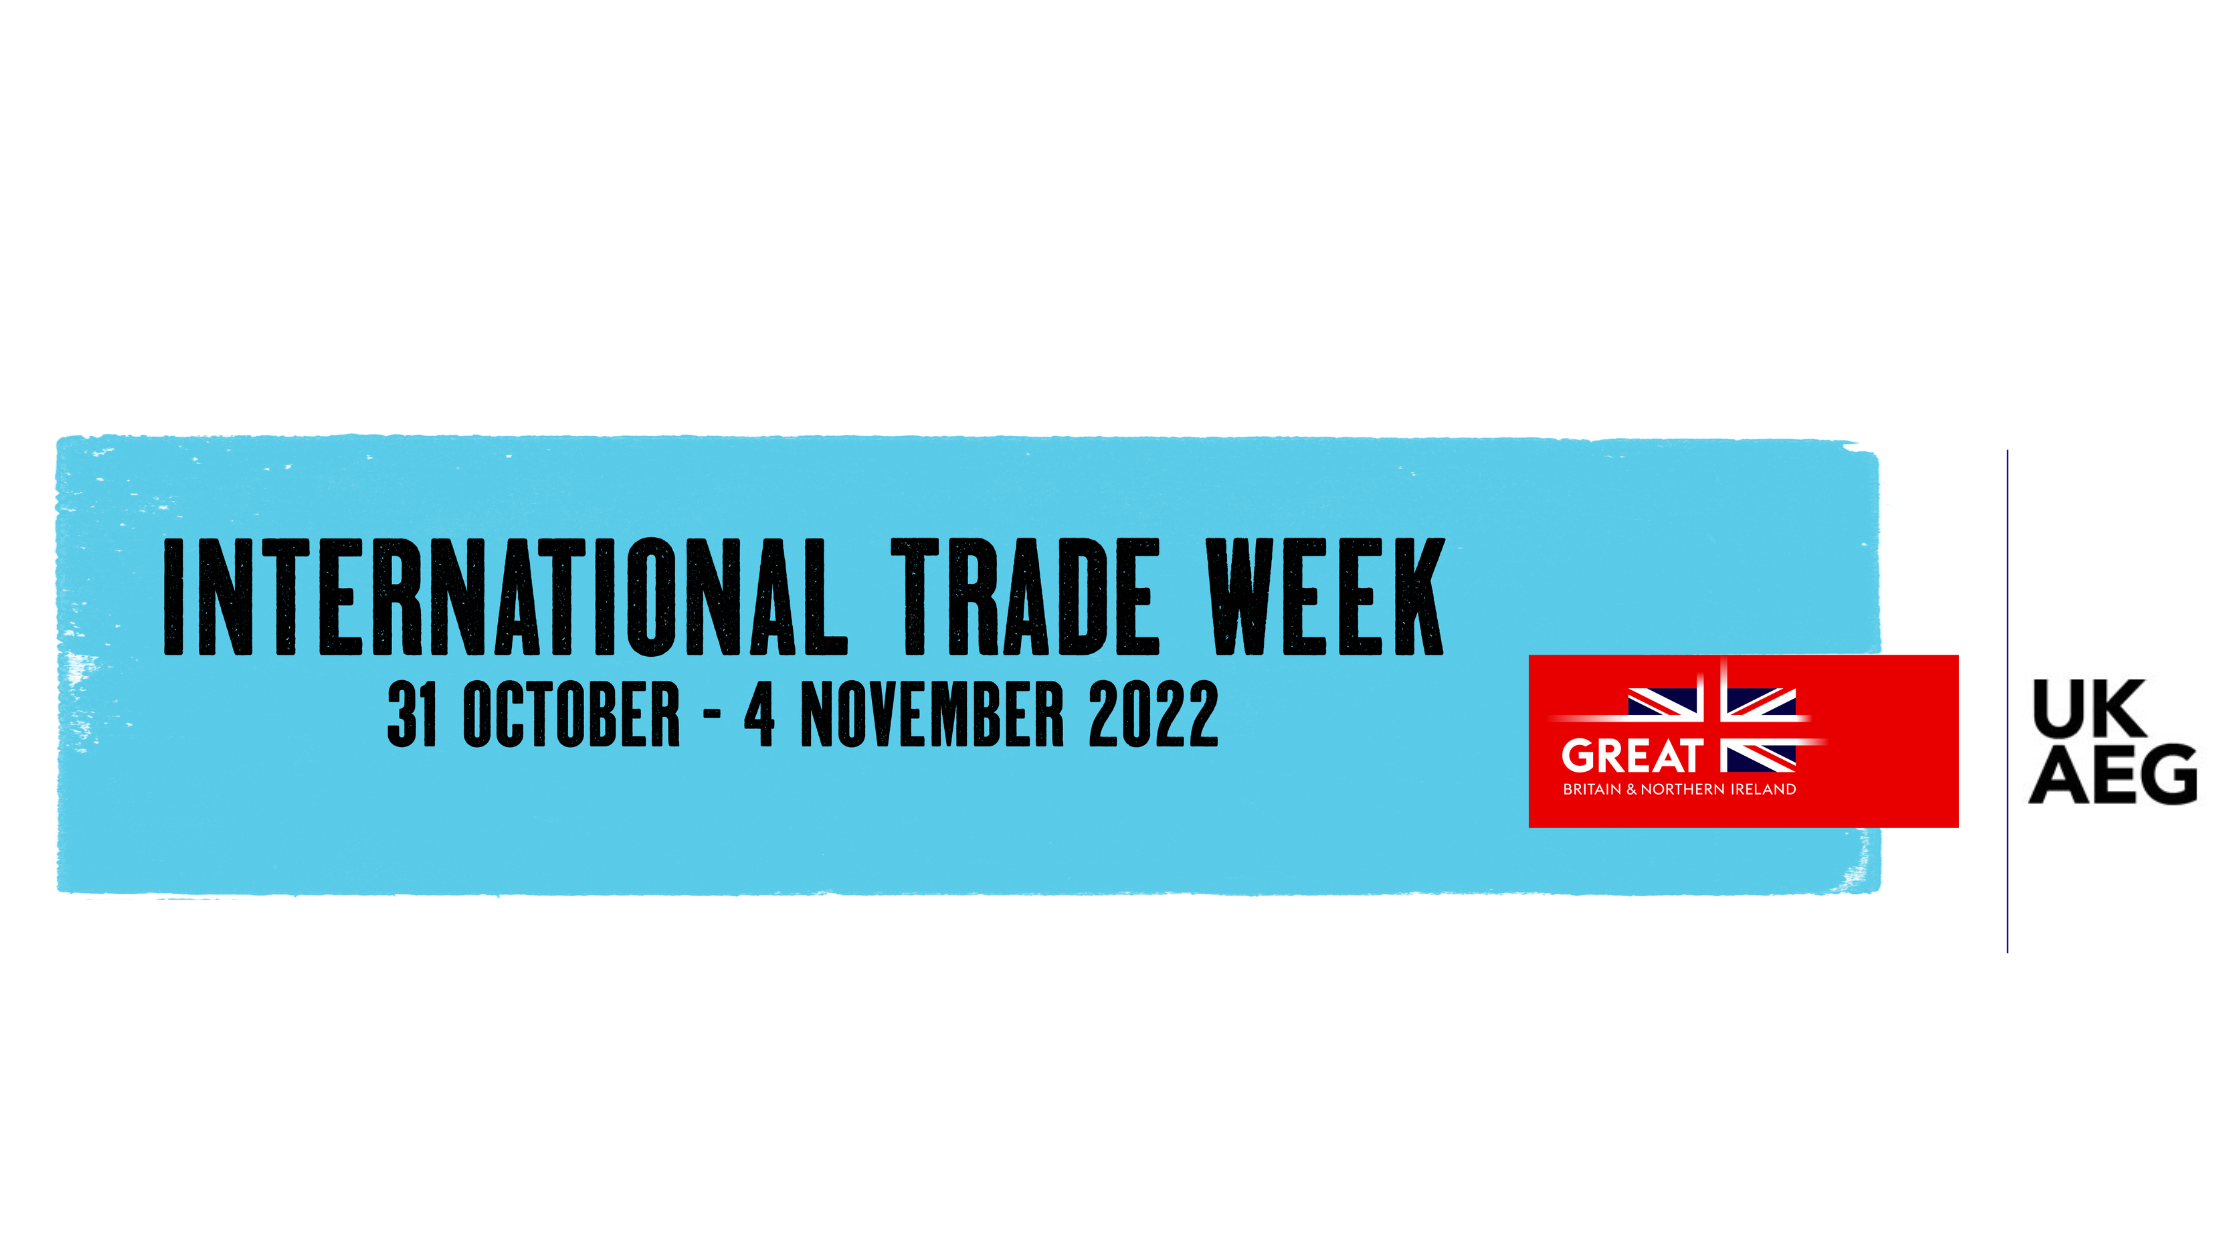 UK Advertising Exports Group Joins International Trade Week